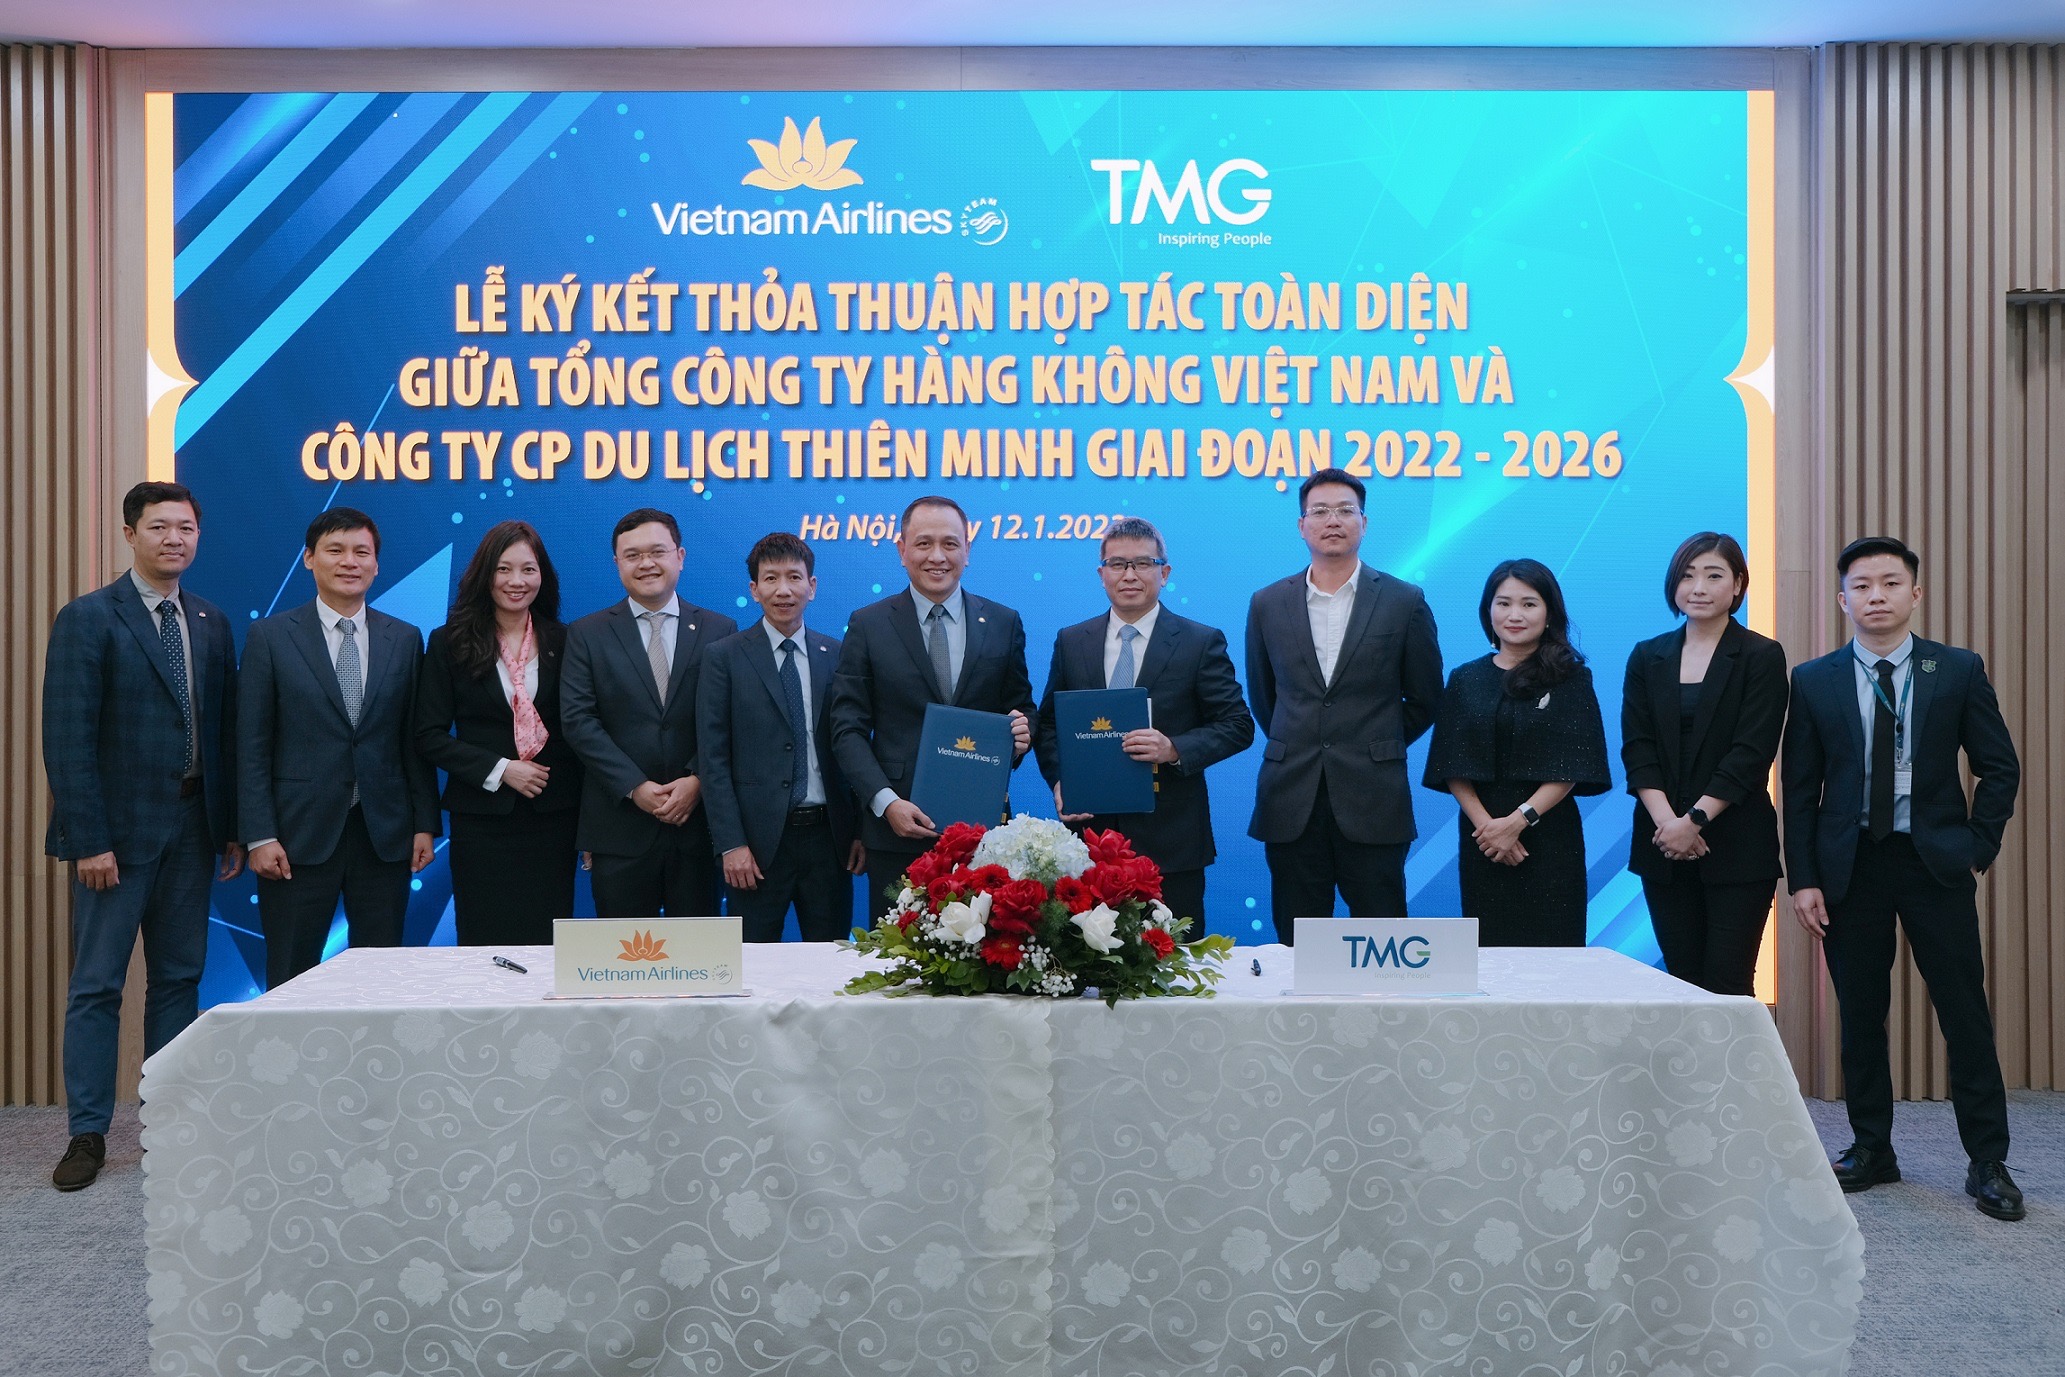 Vietnam Airlines và TMG hợp tác toàn diện giai đoạn 2022-2026 để phát triển hoạt động trong lĩnh vực hàng không và du lịch.